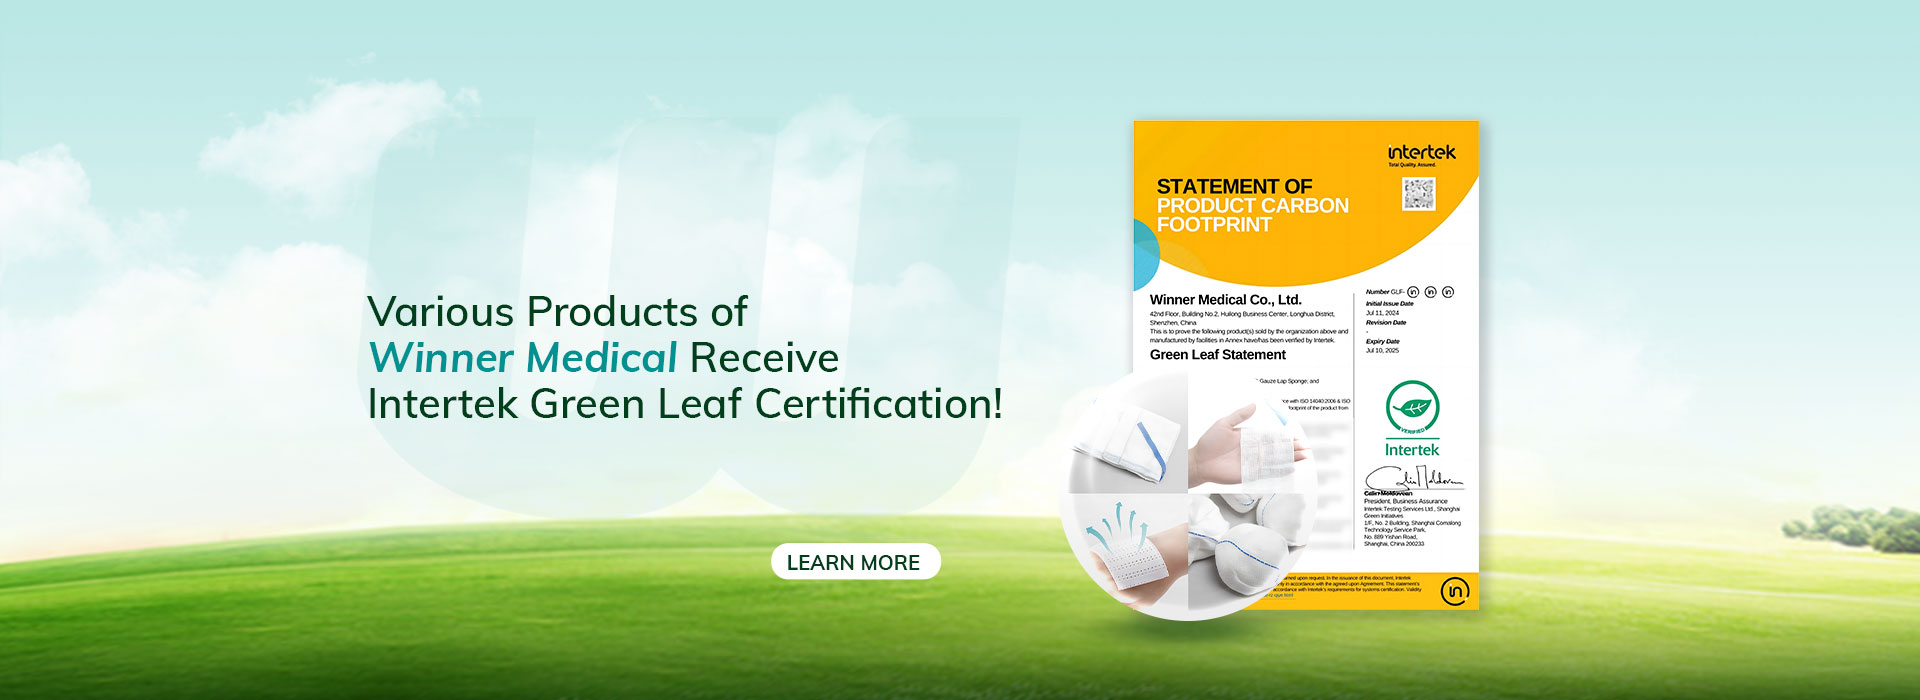 NEWS! Die verschiedenen Produkte von Winner Medical erhalten die Inter tek Green Leaf-Zertifizierung!